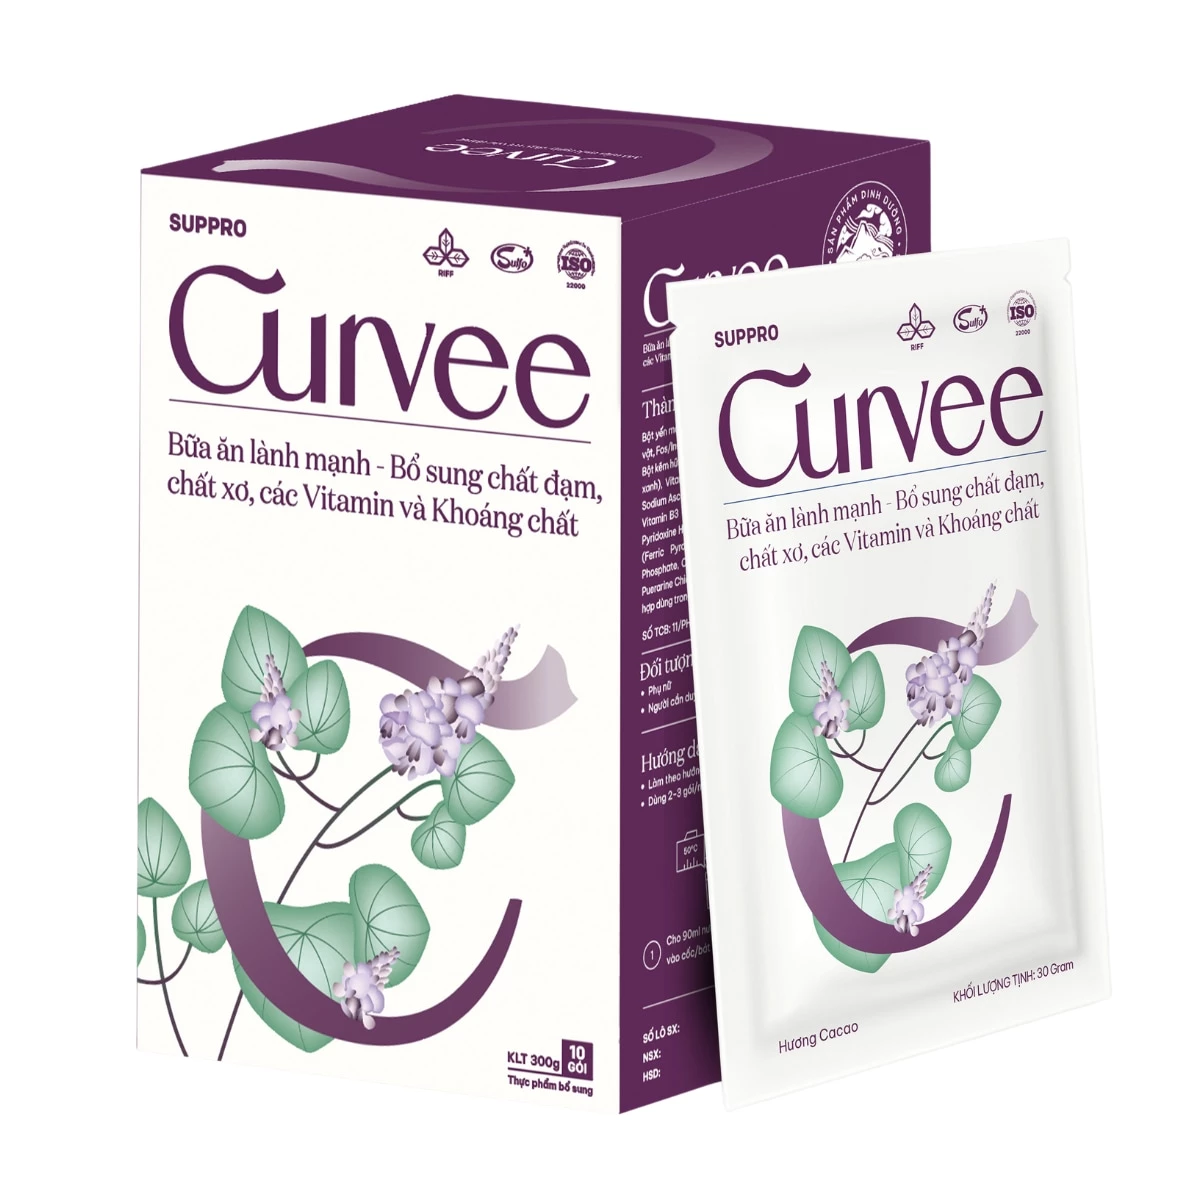 Suppro Curvee - Bổ sung chất đạm, chất xơ, vitamin & khoáng chất